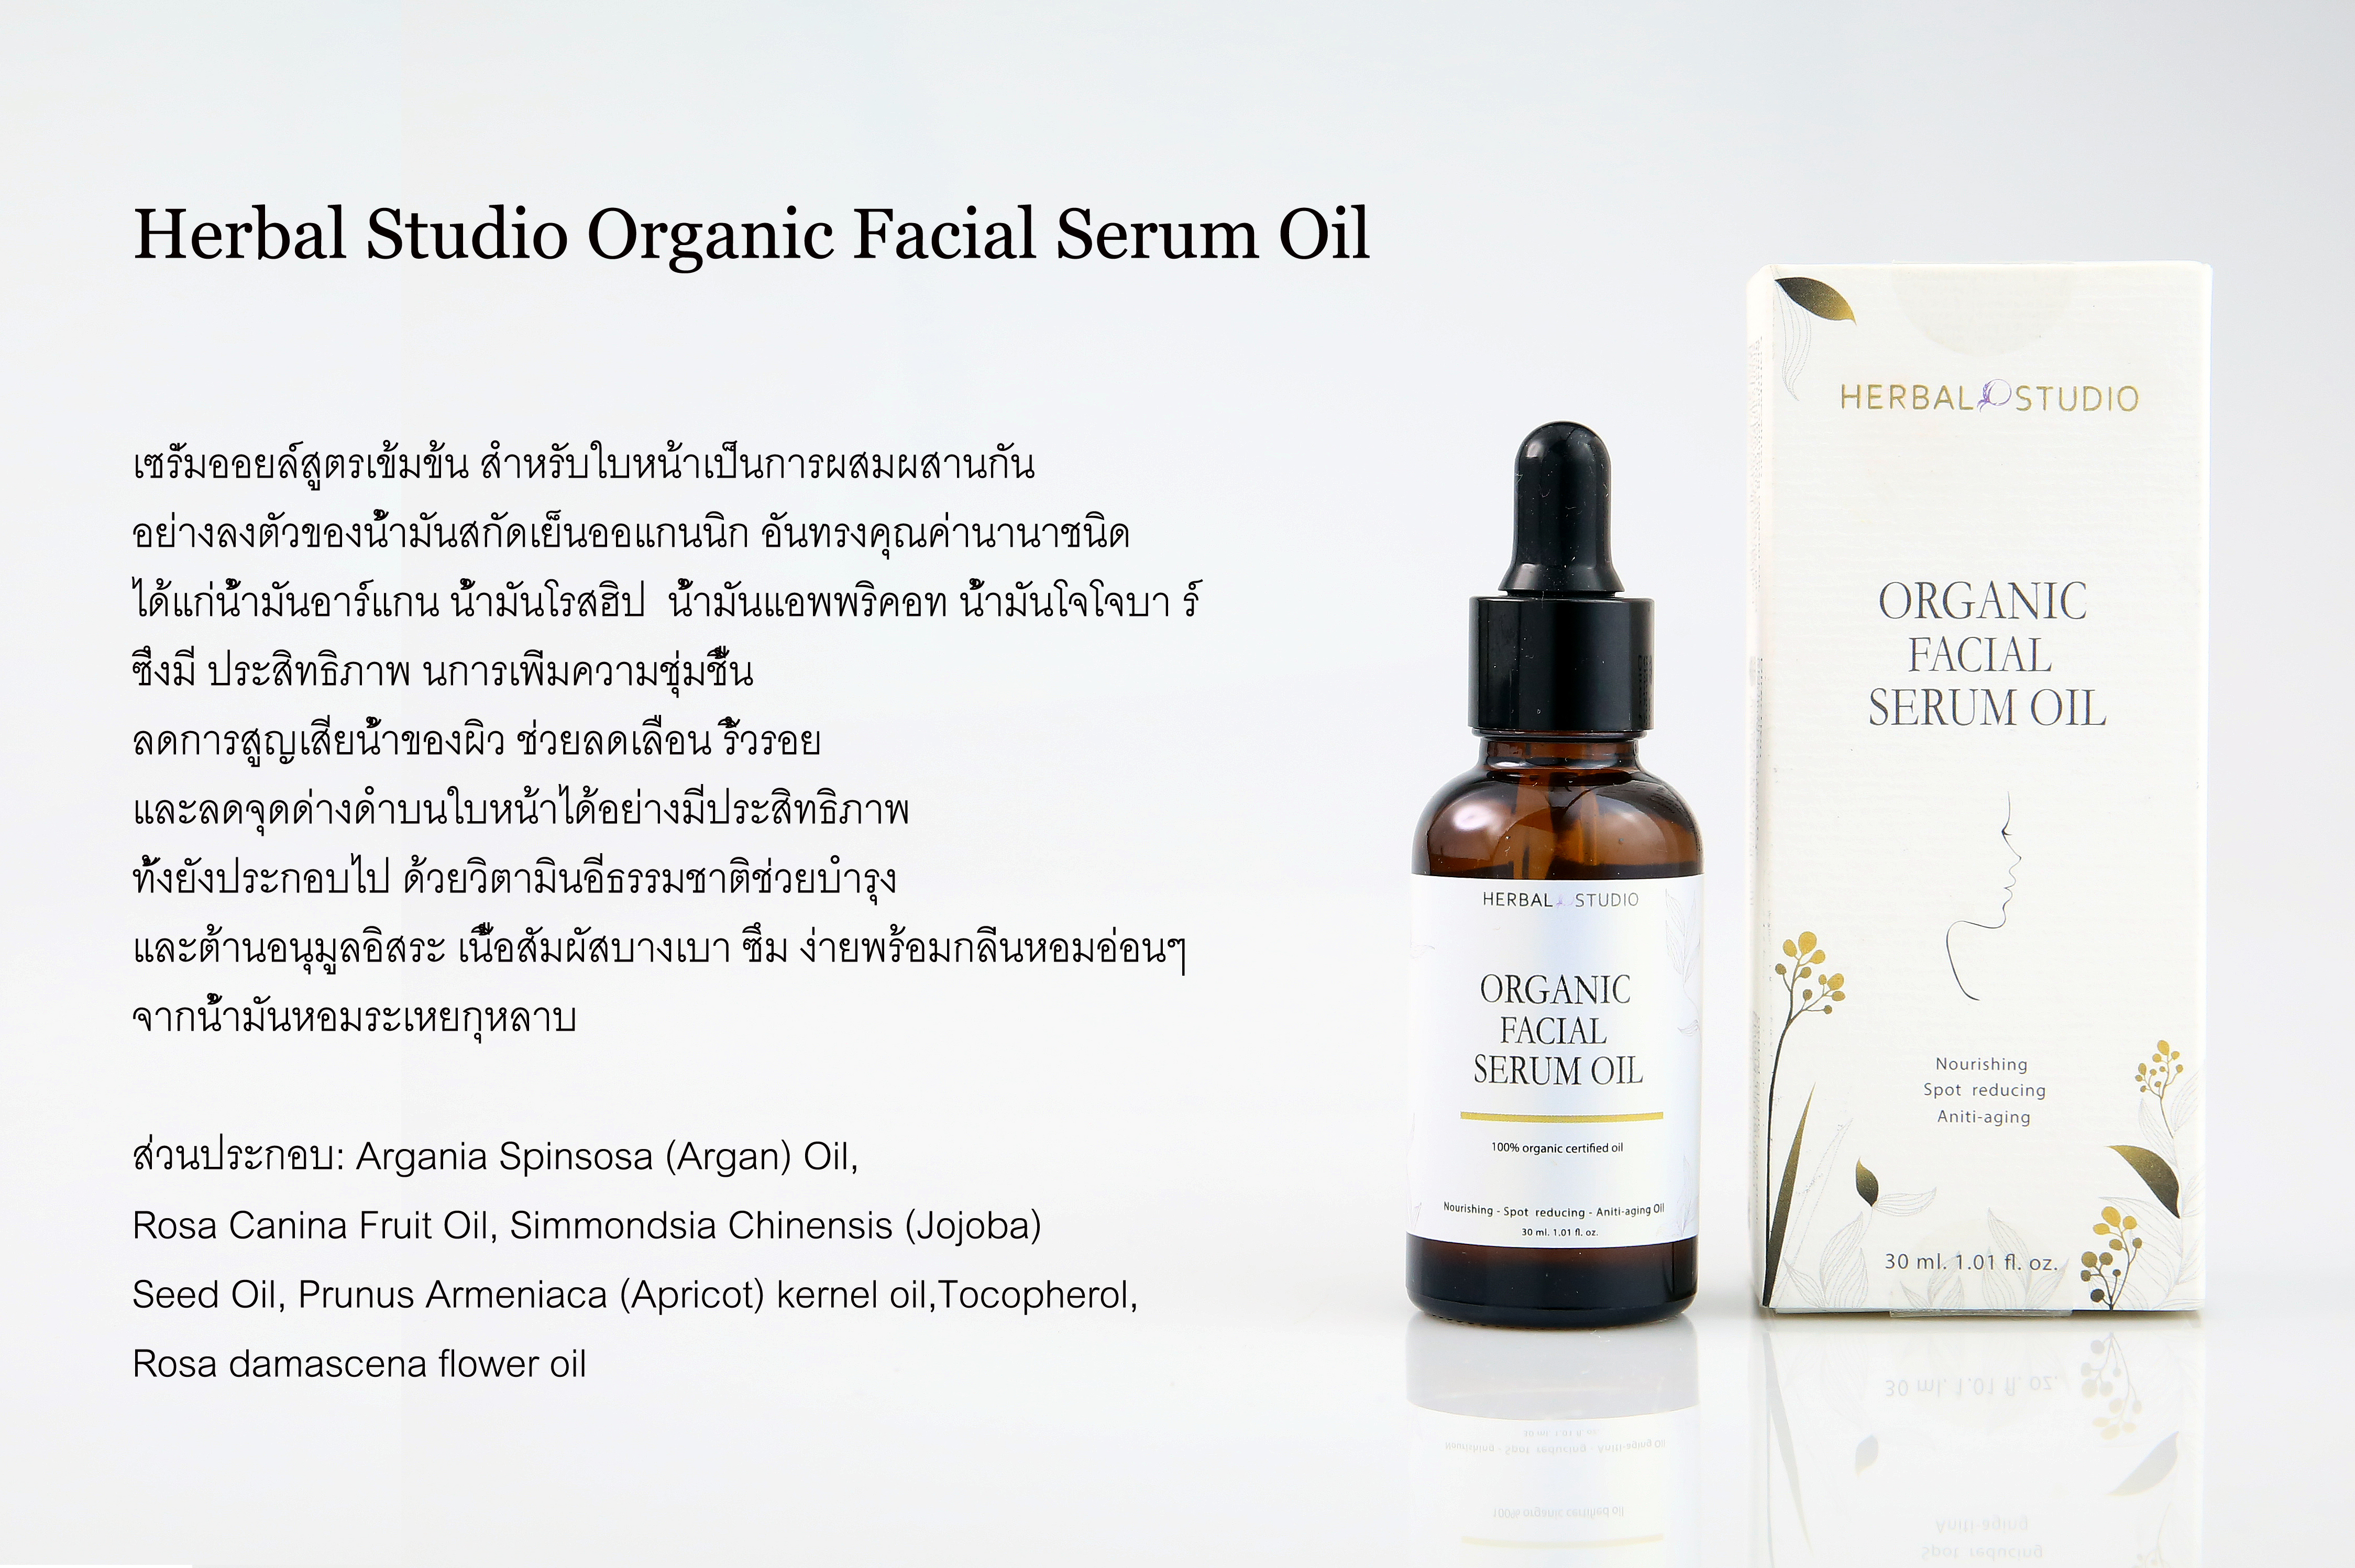 ็Herbal Studio Studio Organic Facial Serum Oil 30 ml เซรั่มน้ำมันอาร์แกนออยล์ ช่วยลดเลือน ริ้วรอย และลดจุดด่างดําบนใบหน้า จากธรรมชาติ 100%